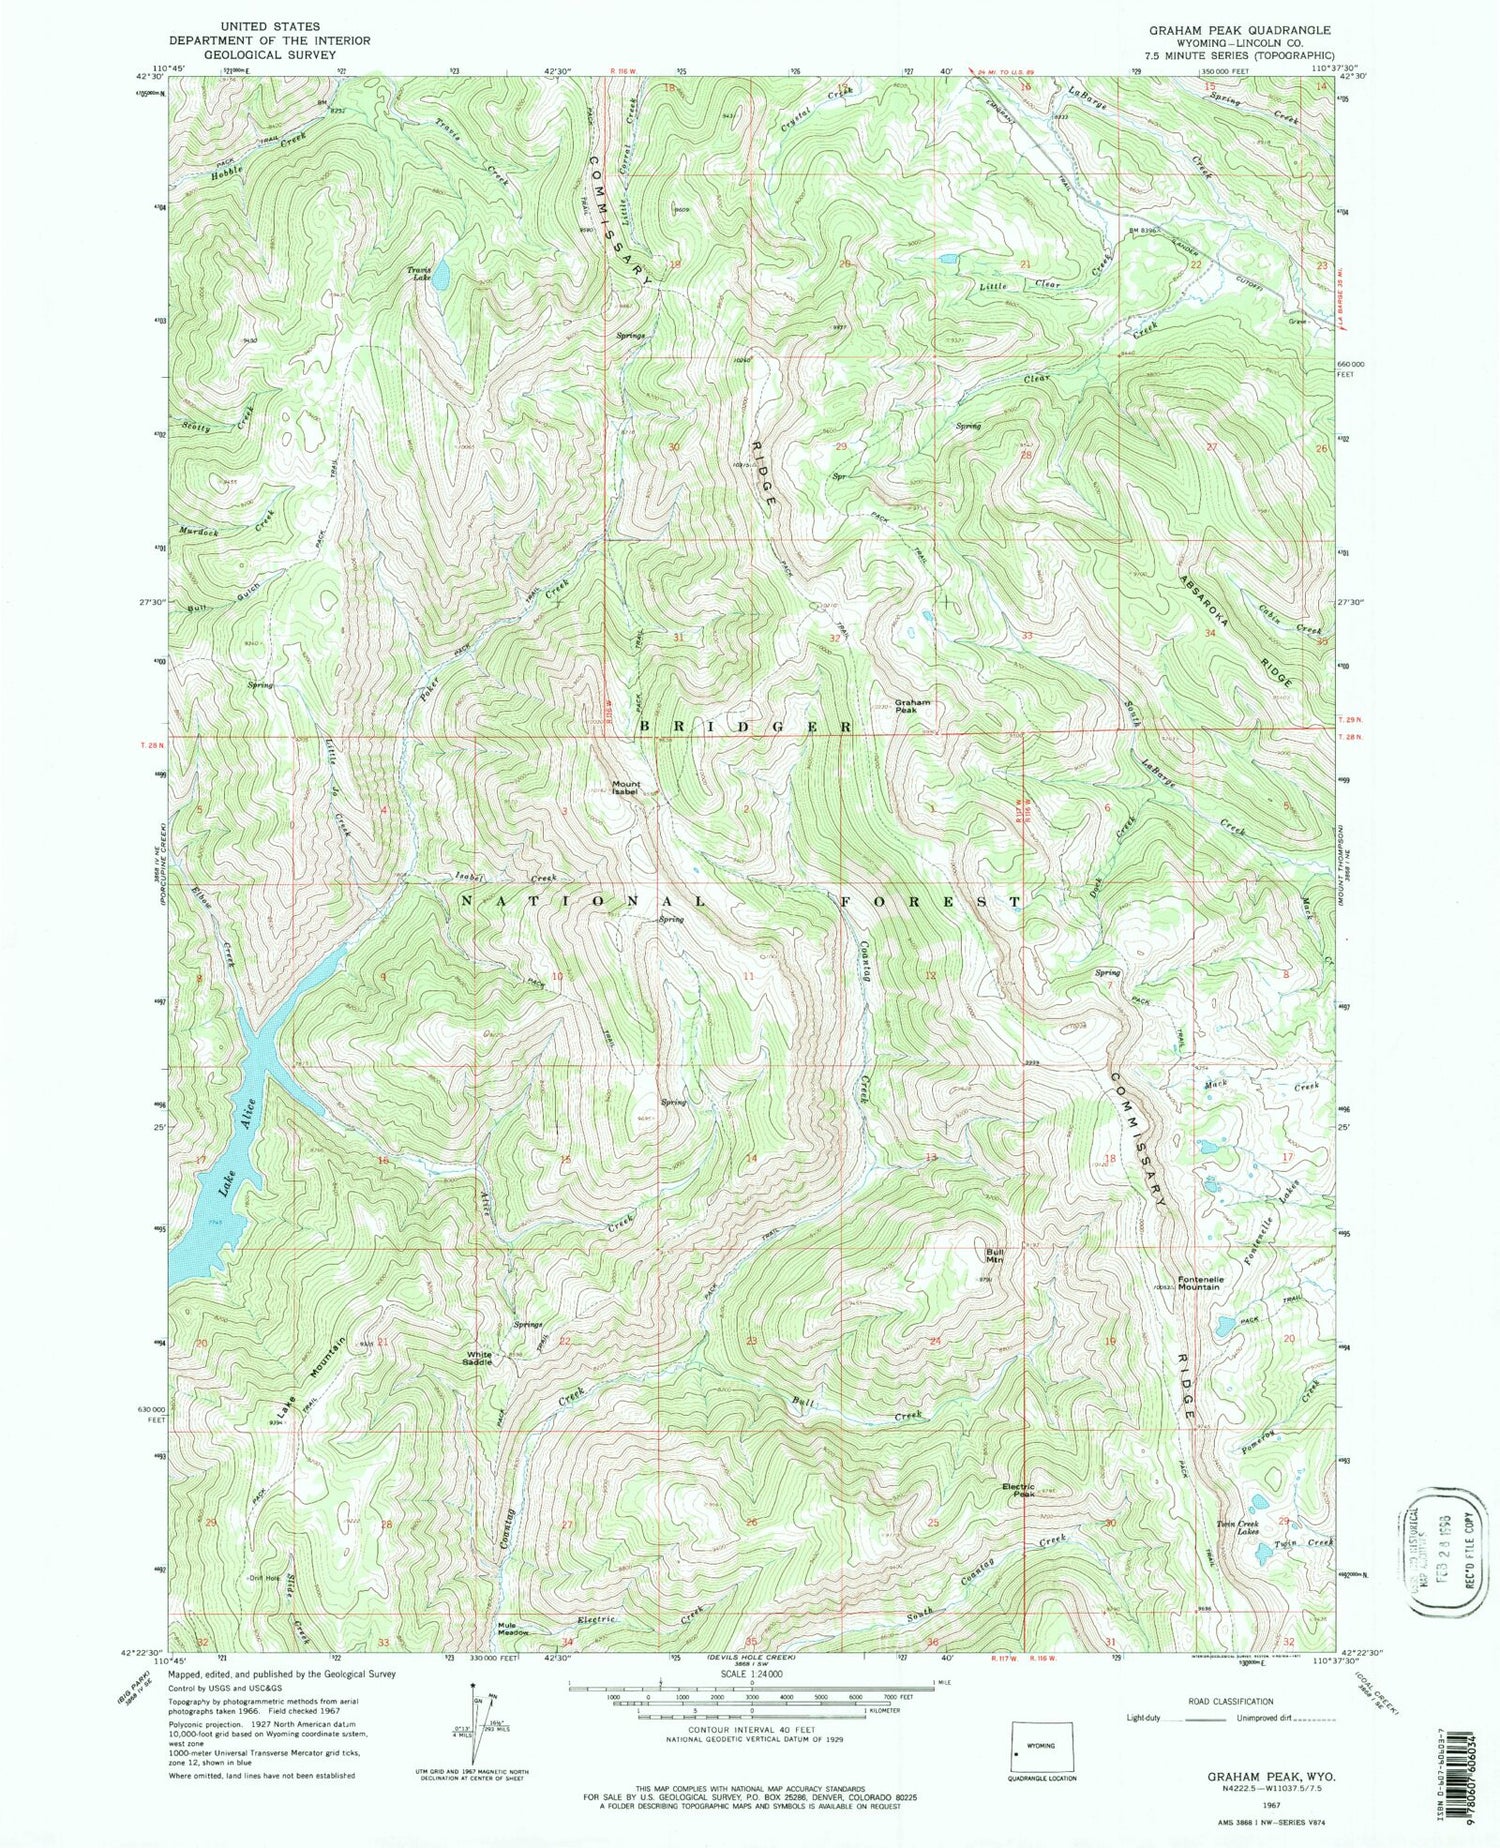 USGS Classic Graham Peak Wyoming 7.5'x7.5' Topo Map Image